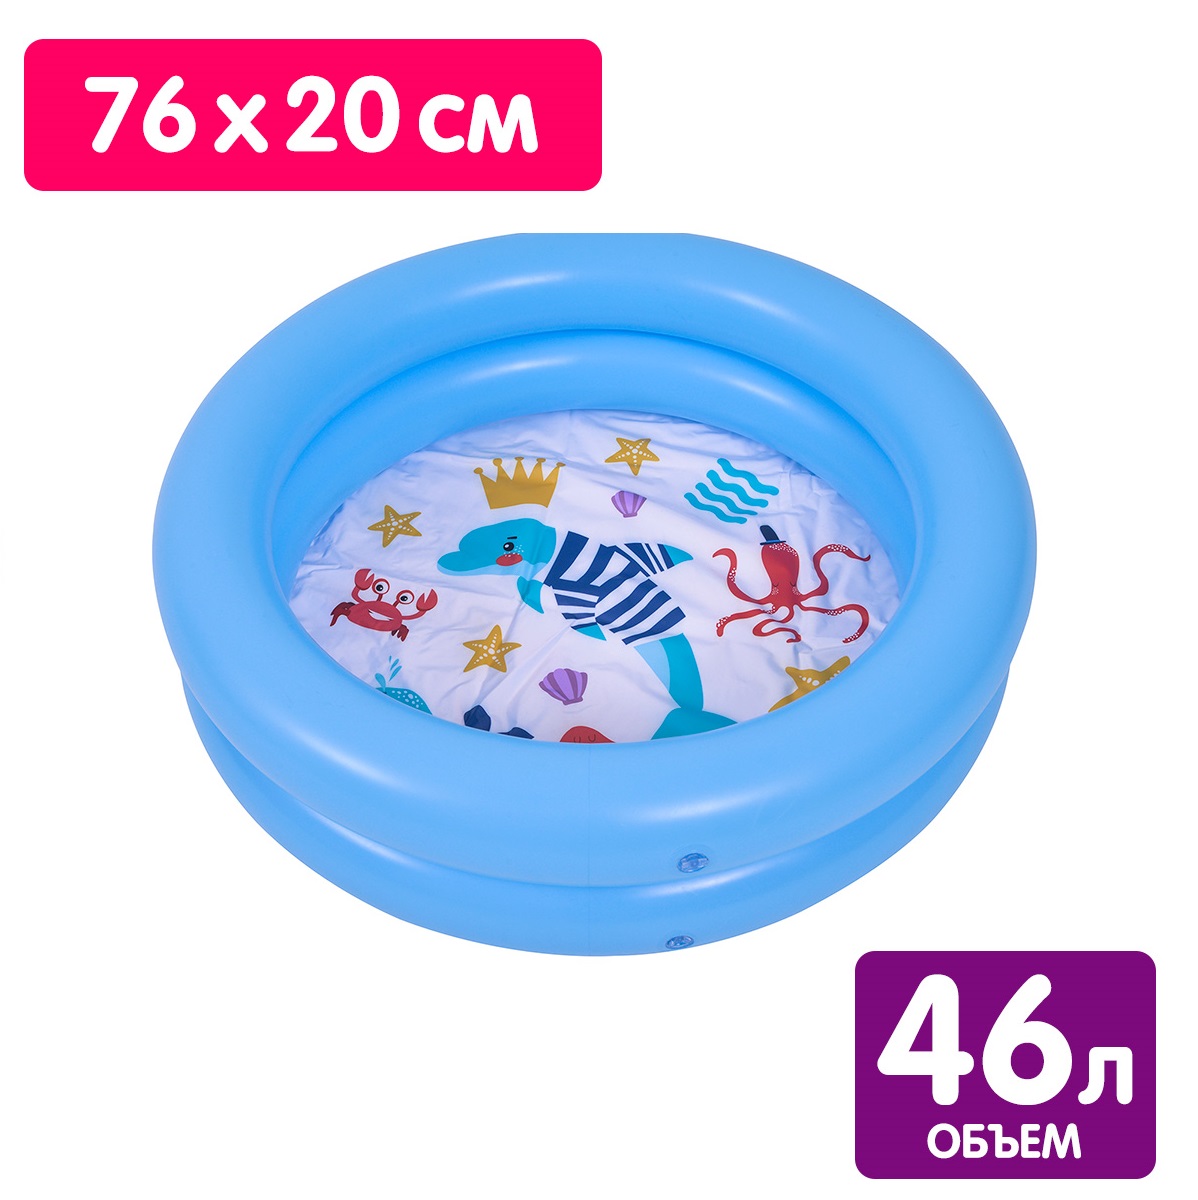 Надувной детский бассейн Jilong Морская фауна 76х20 см 46 л 2 кольца голубой - фото 2